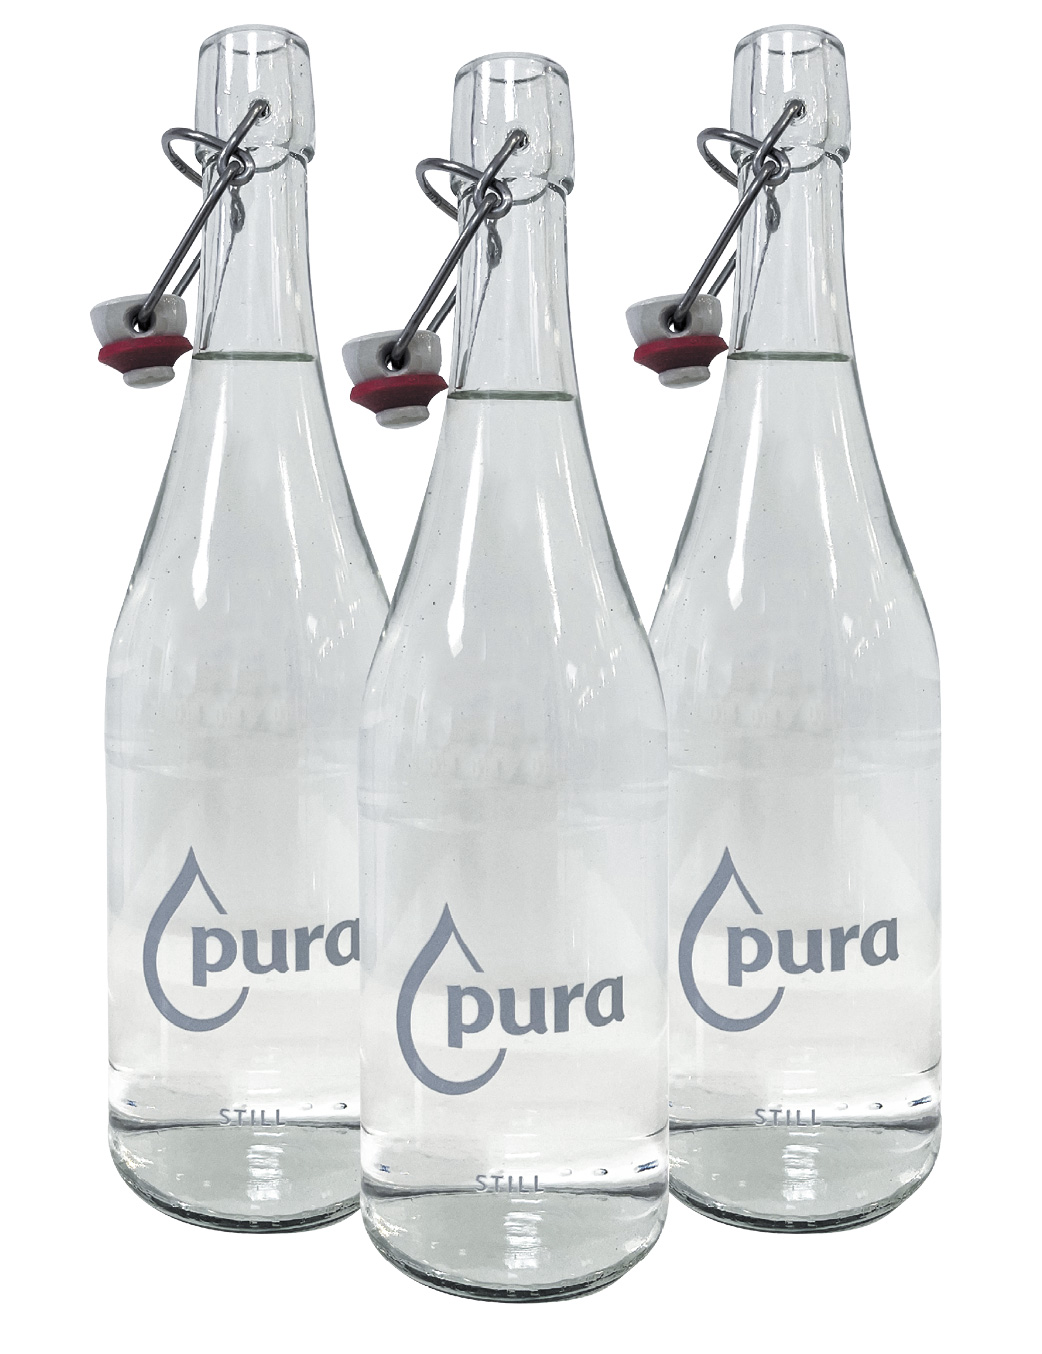 pura glass bottles